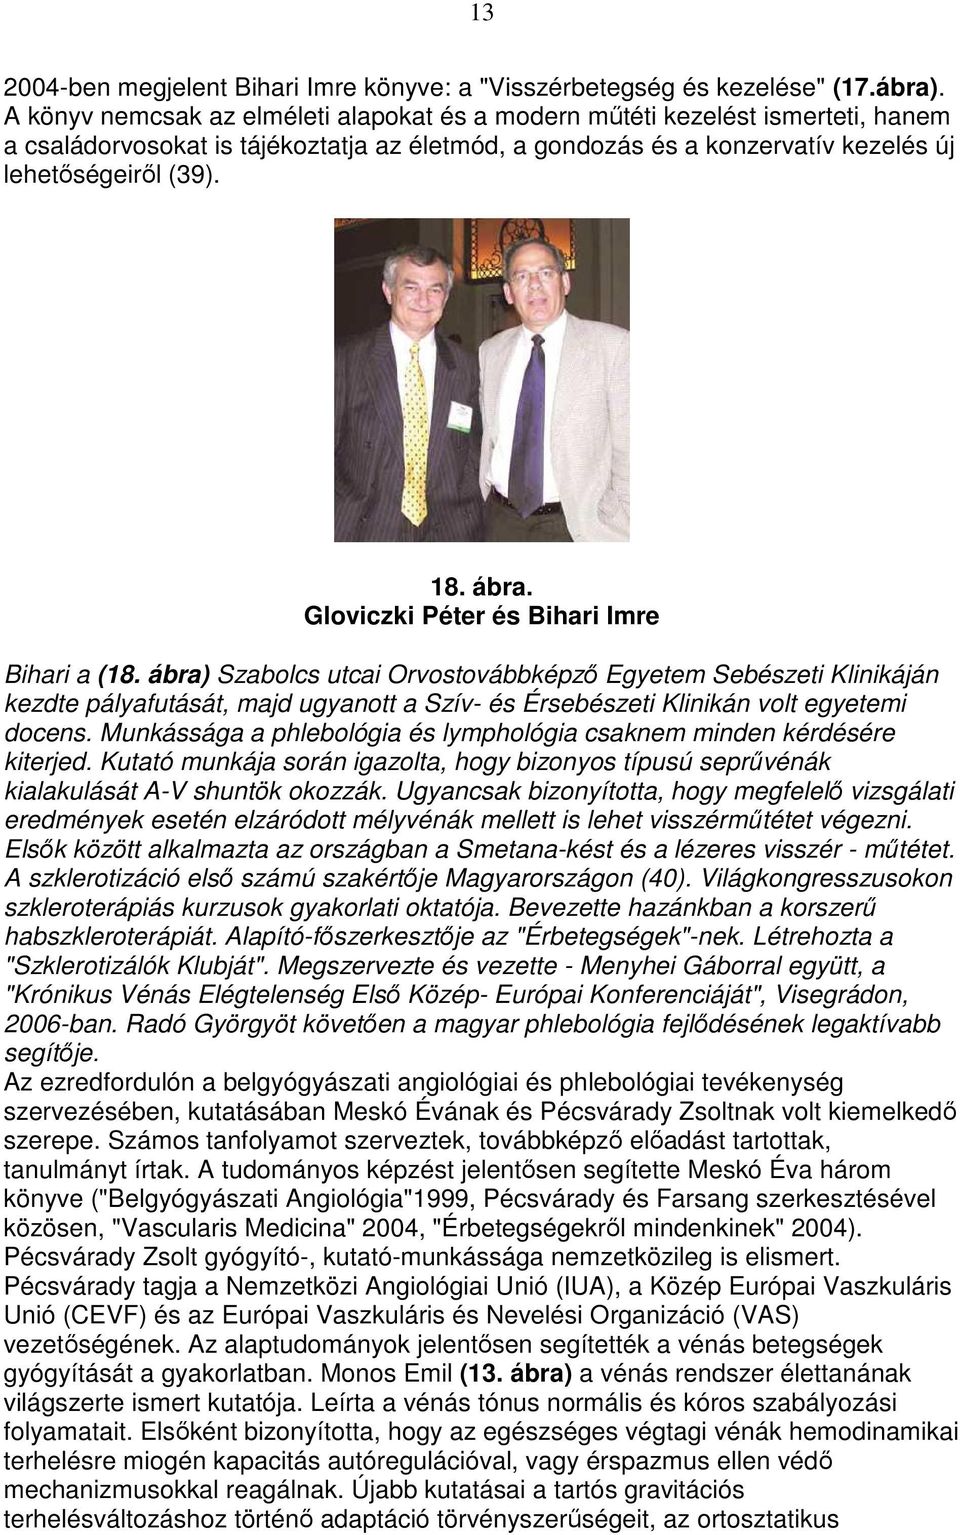 Gloviczki Péter és Bihari Imre Bihari a (18. ábra) Szabolcs utcai Orvostovábbképzı Egyetem Sebészeti Klinikáján kezdte pályafutását, majd ugyanott a Szív- és Érsebészeti Klinikán volt egyetemi docens.